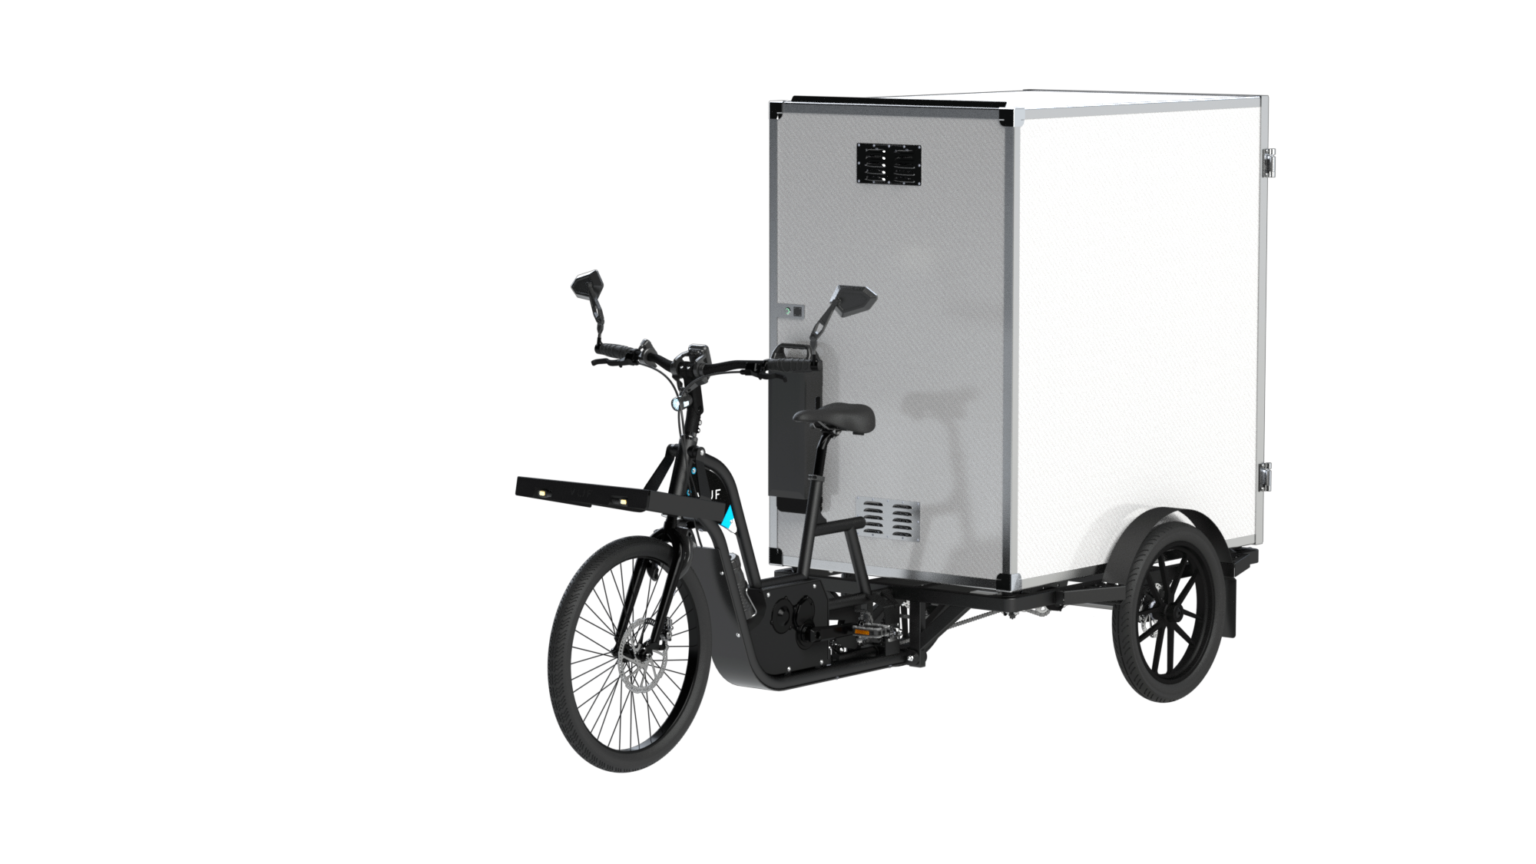 Triporteur VUF XXL Max - Excellent Vélo cargo par Vuf - Seulement €8400! Acheter maintenant sur Nexyo.fr